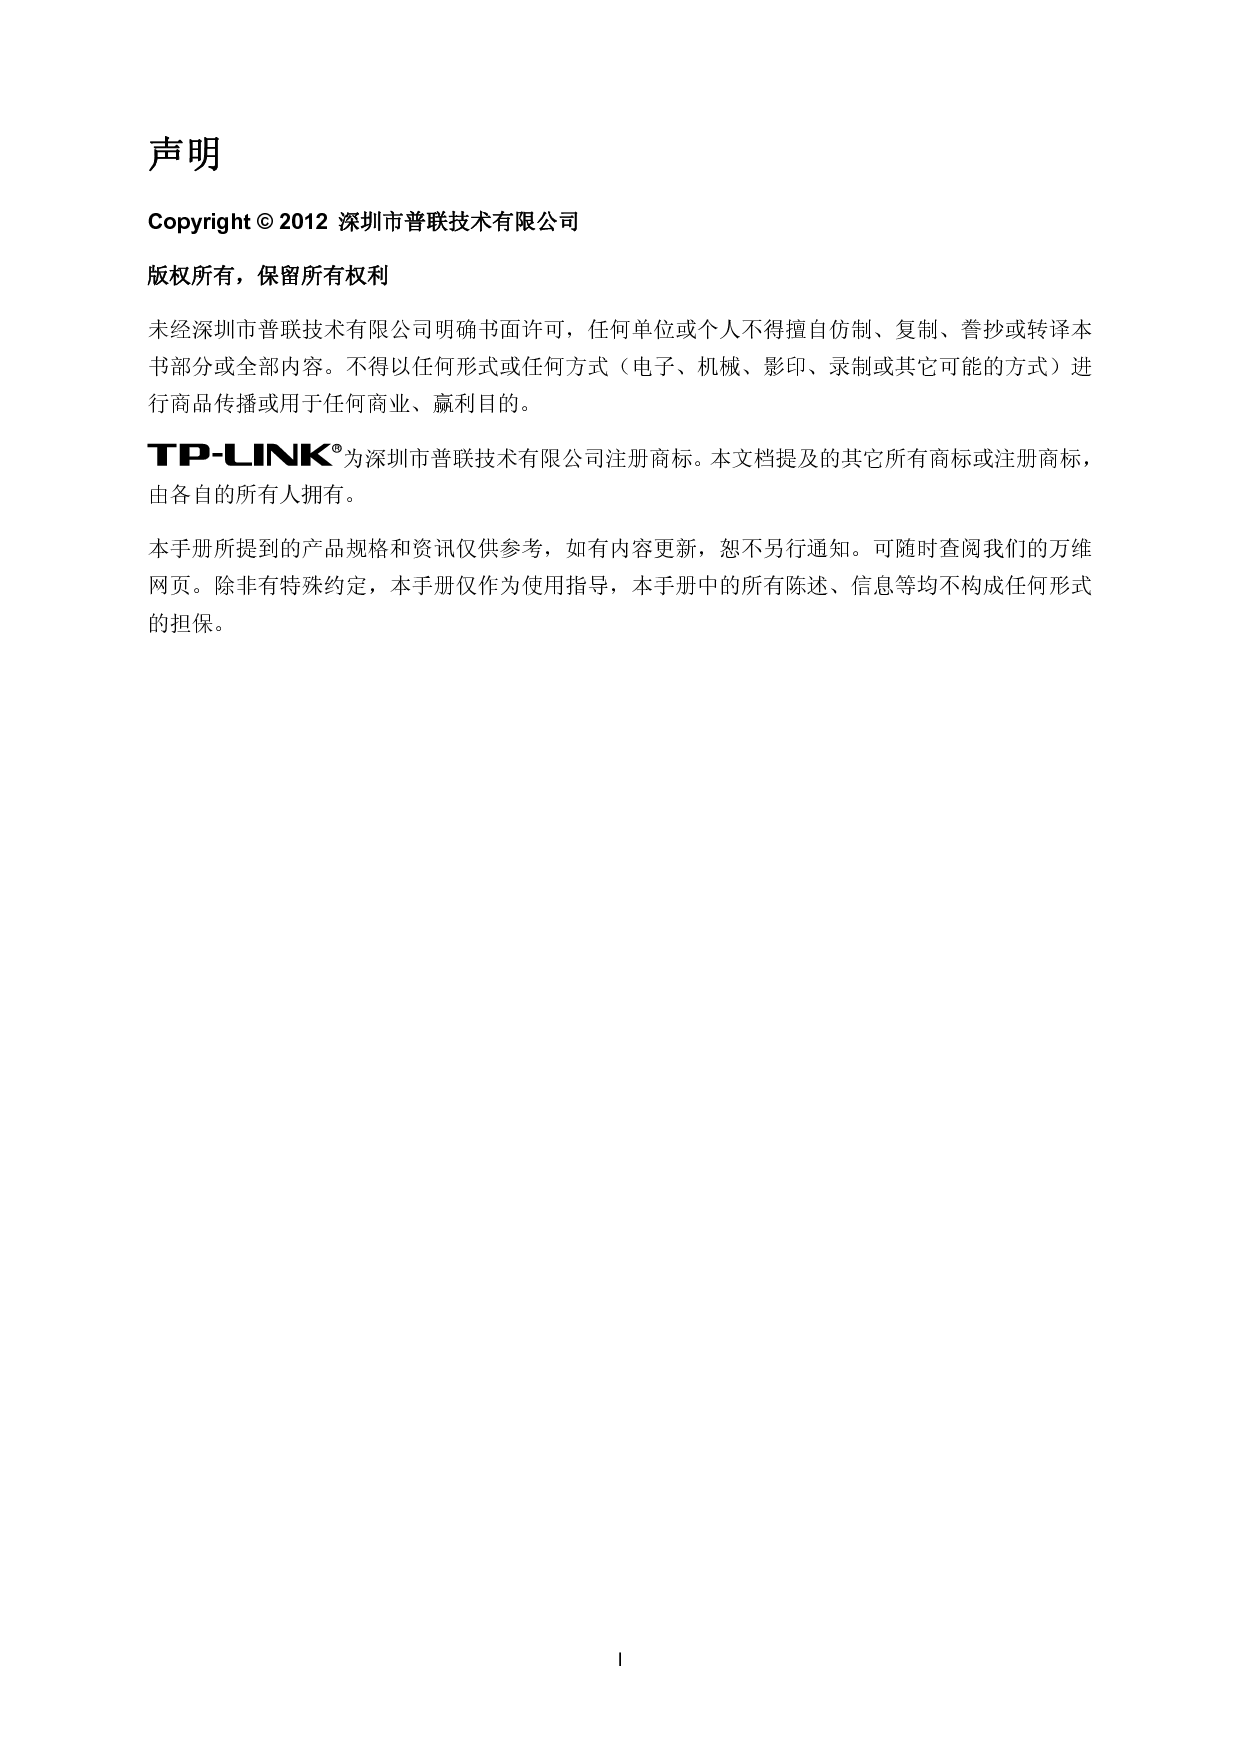 普联 TP-Link TL-SL5428 第一版 2.1.0 用户手册 第1页